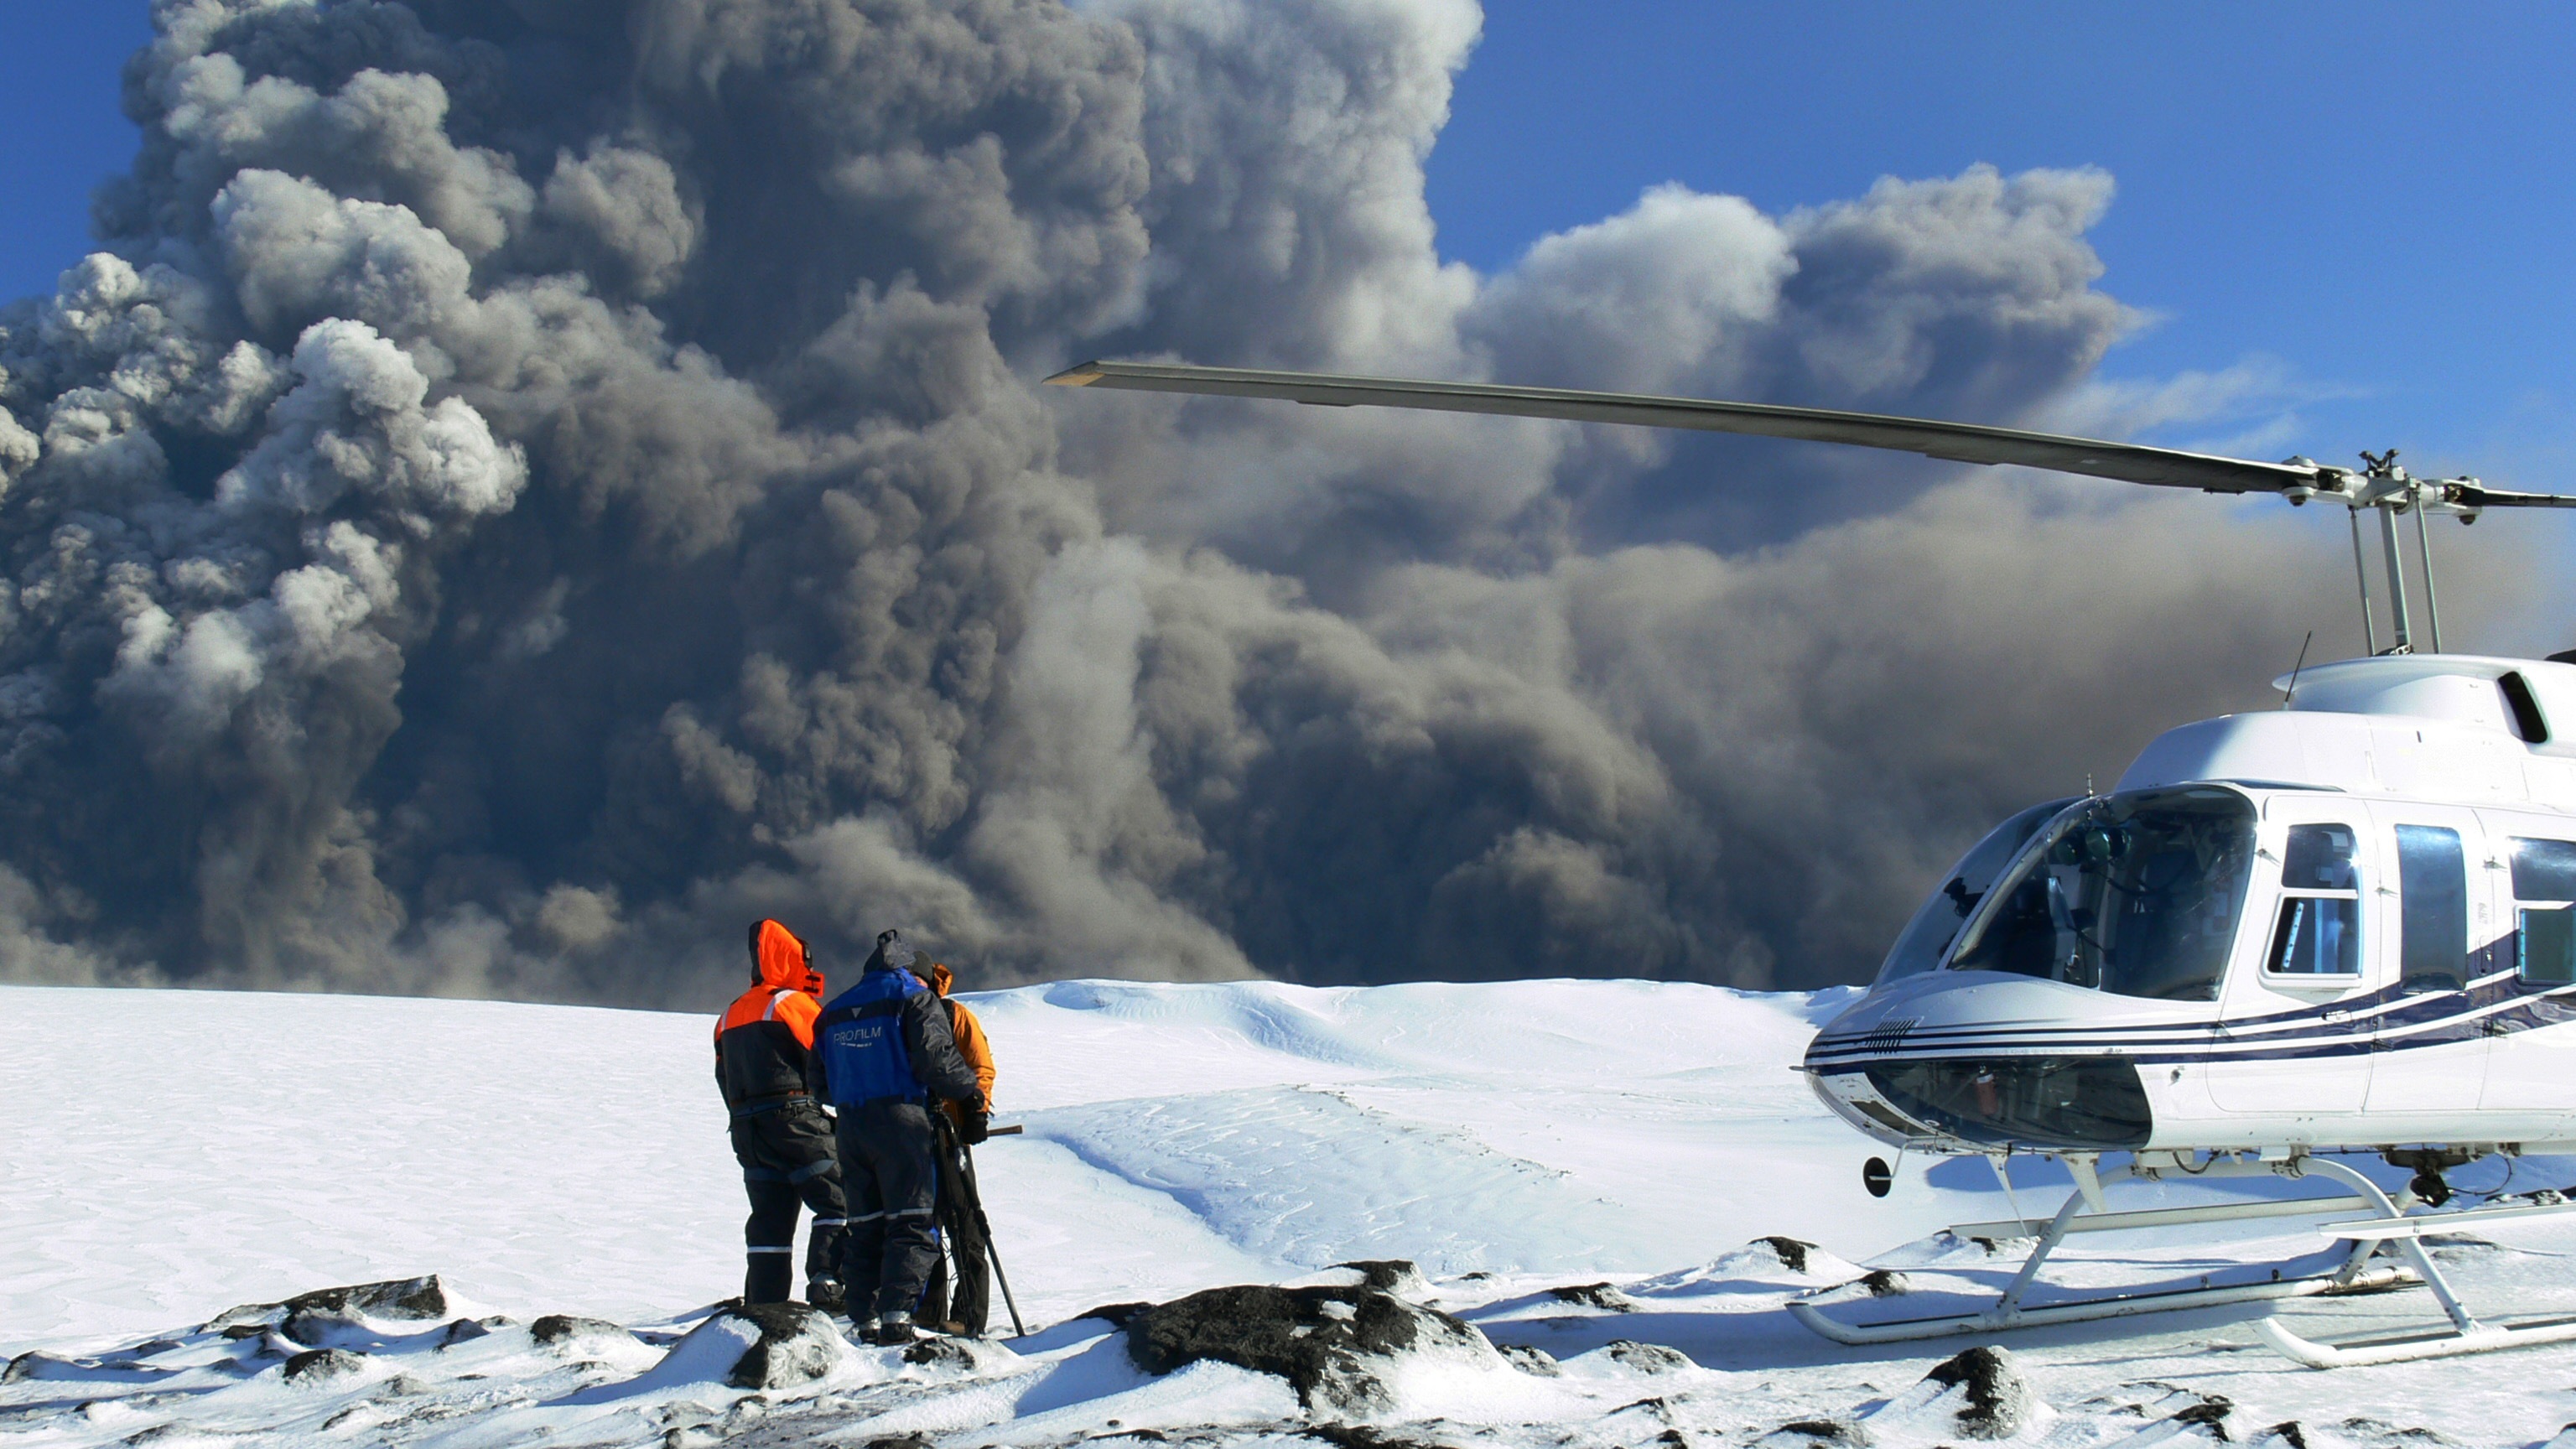 Vulkanen Eyjafjallajökull har slutat spy ut aska och lava, säger experterna.